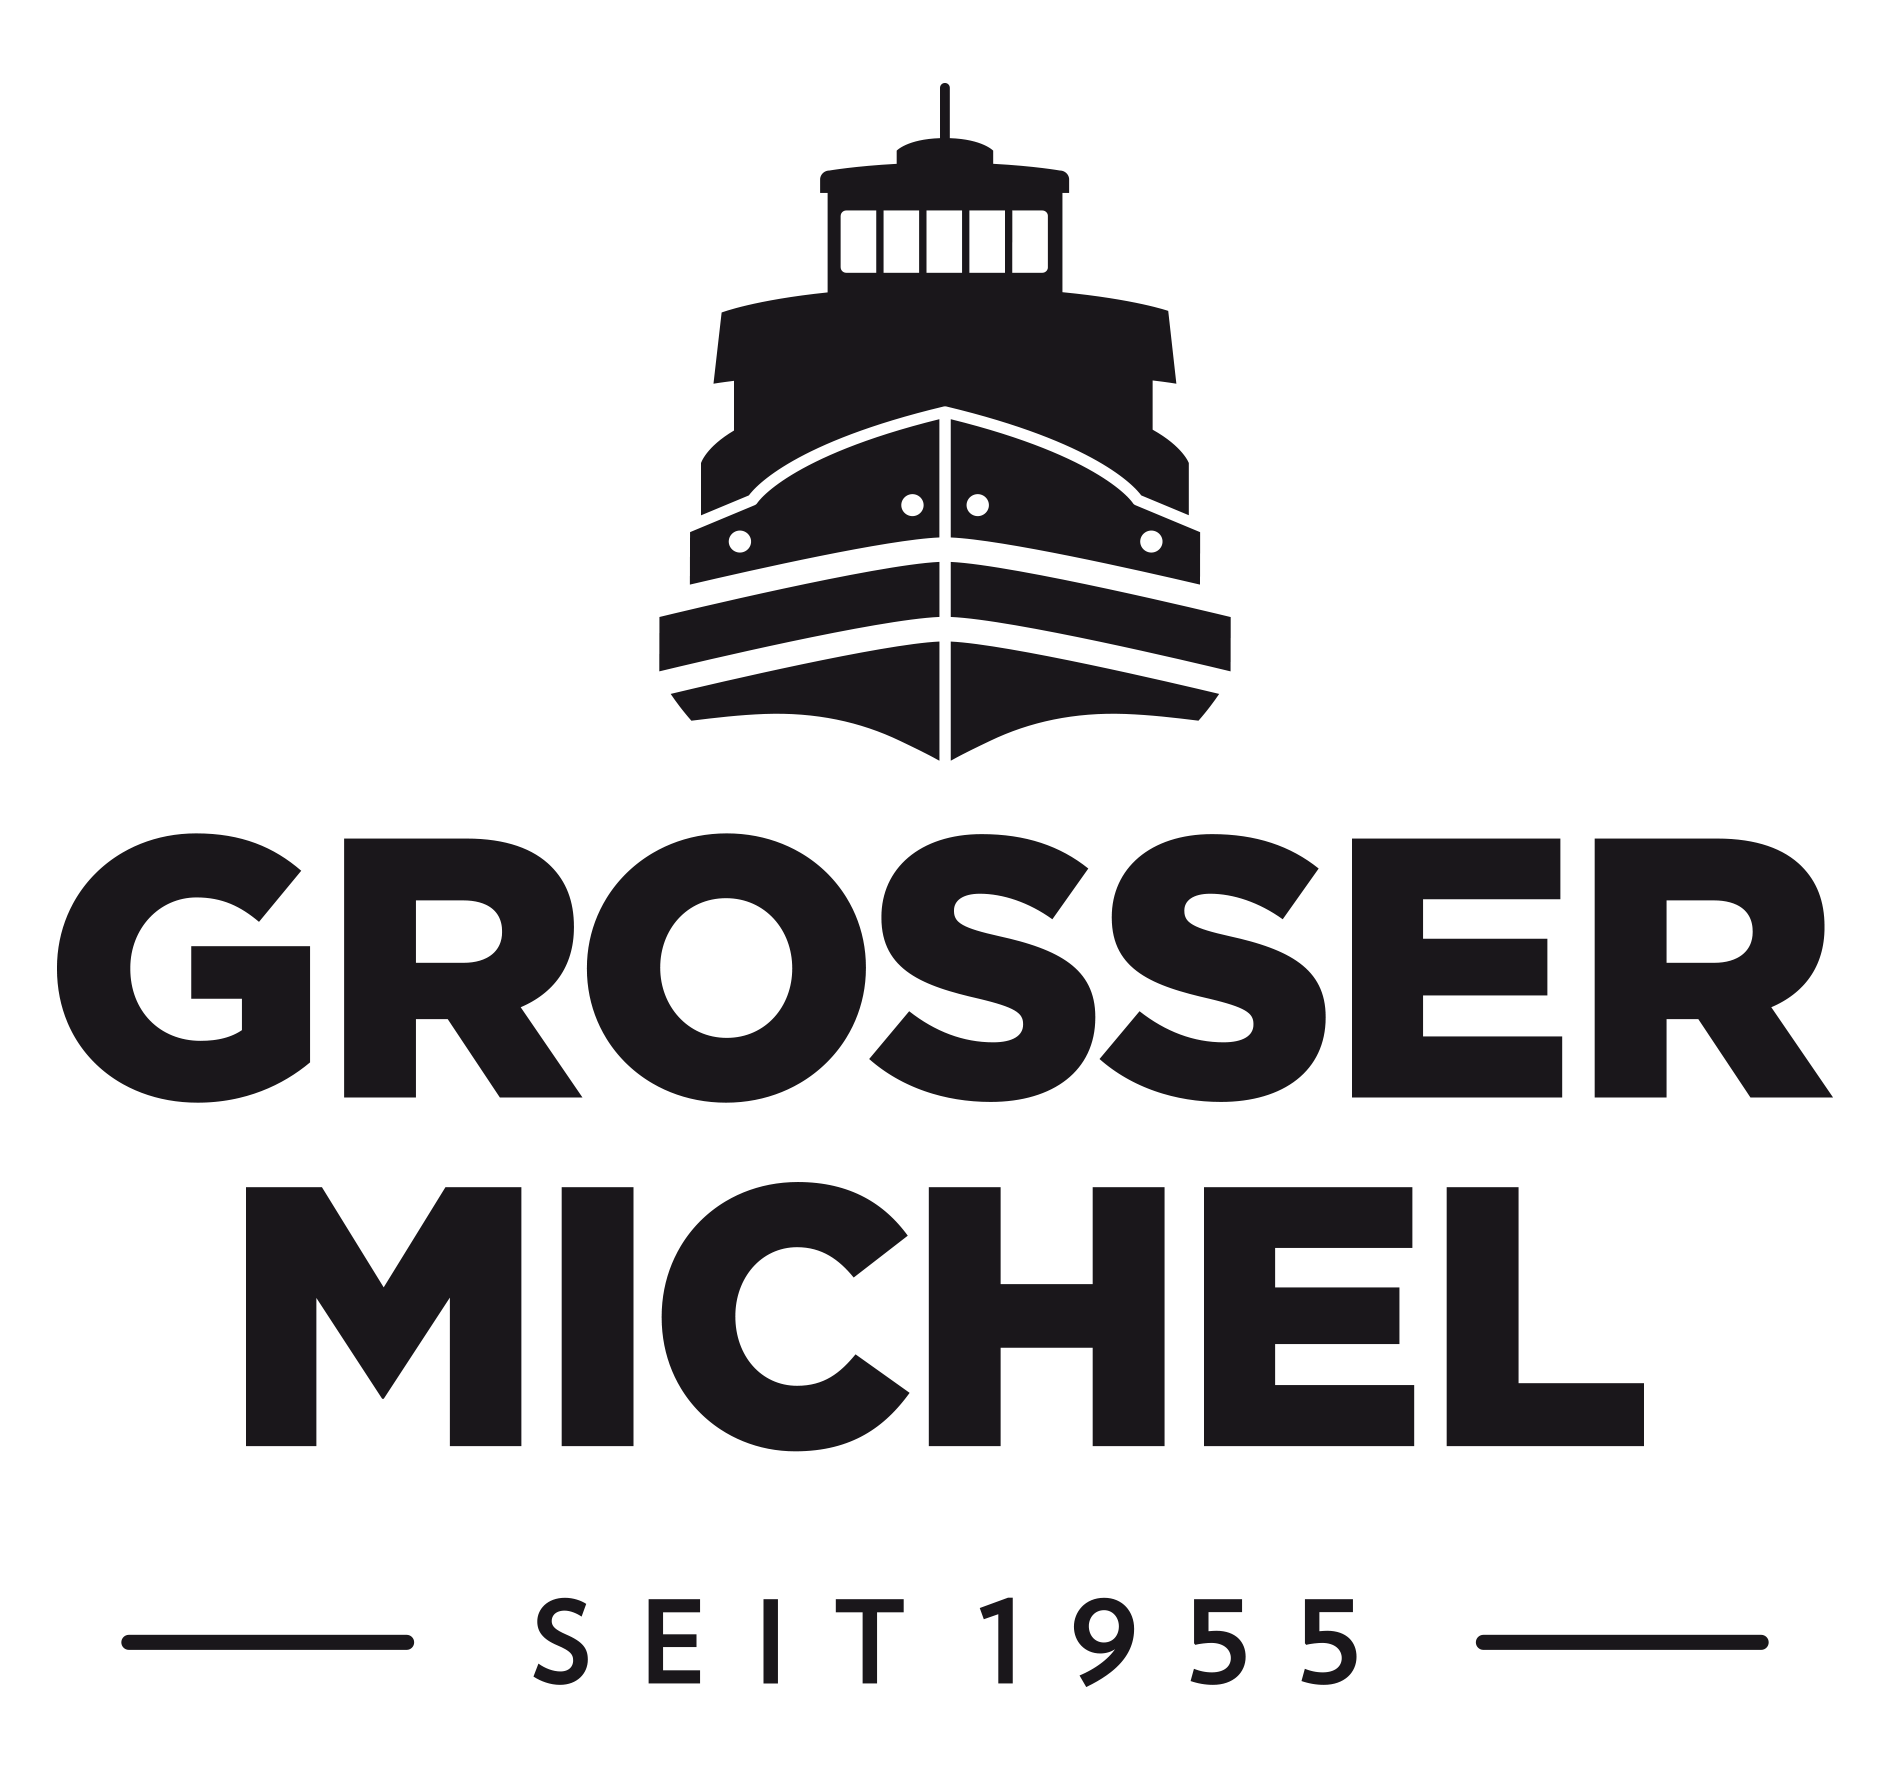 grosser Michel logo